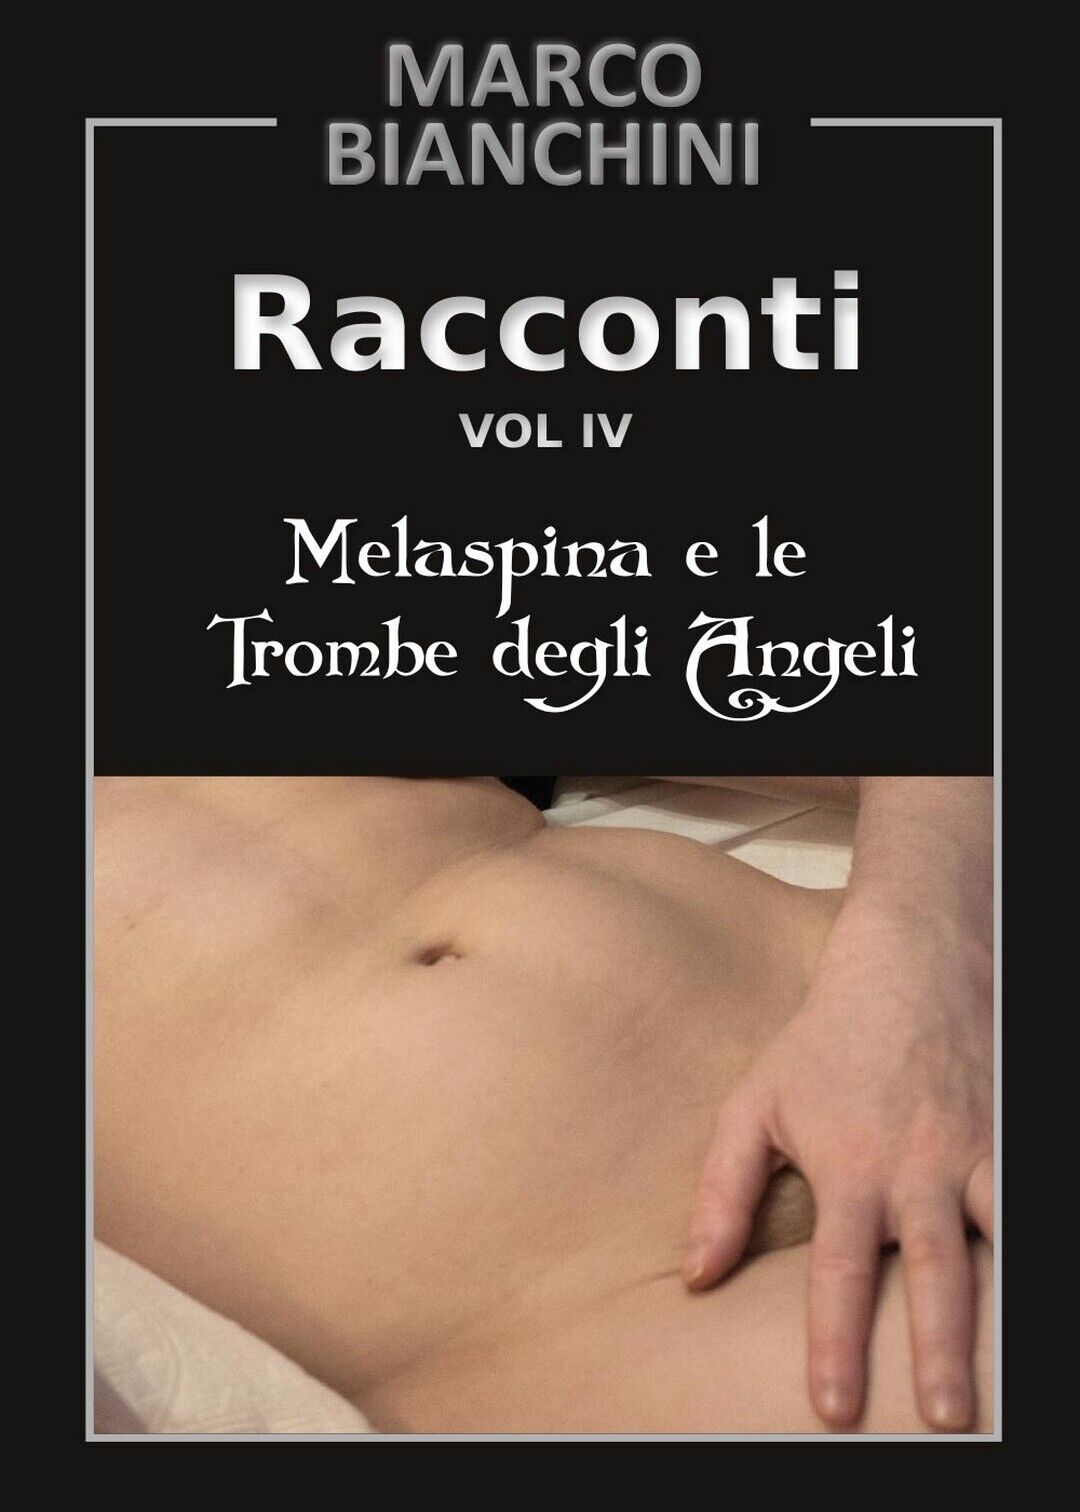 Melaspina e le trombe degli angeli. Racconti Vol.4  di Marco Bianchini,  2017